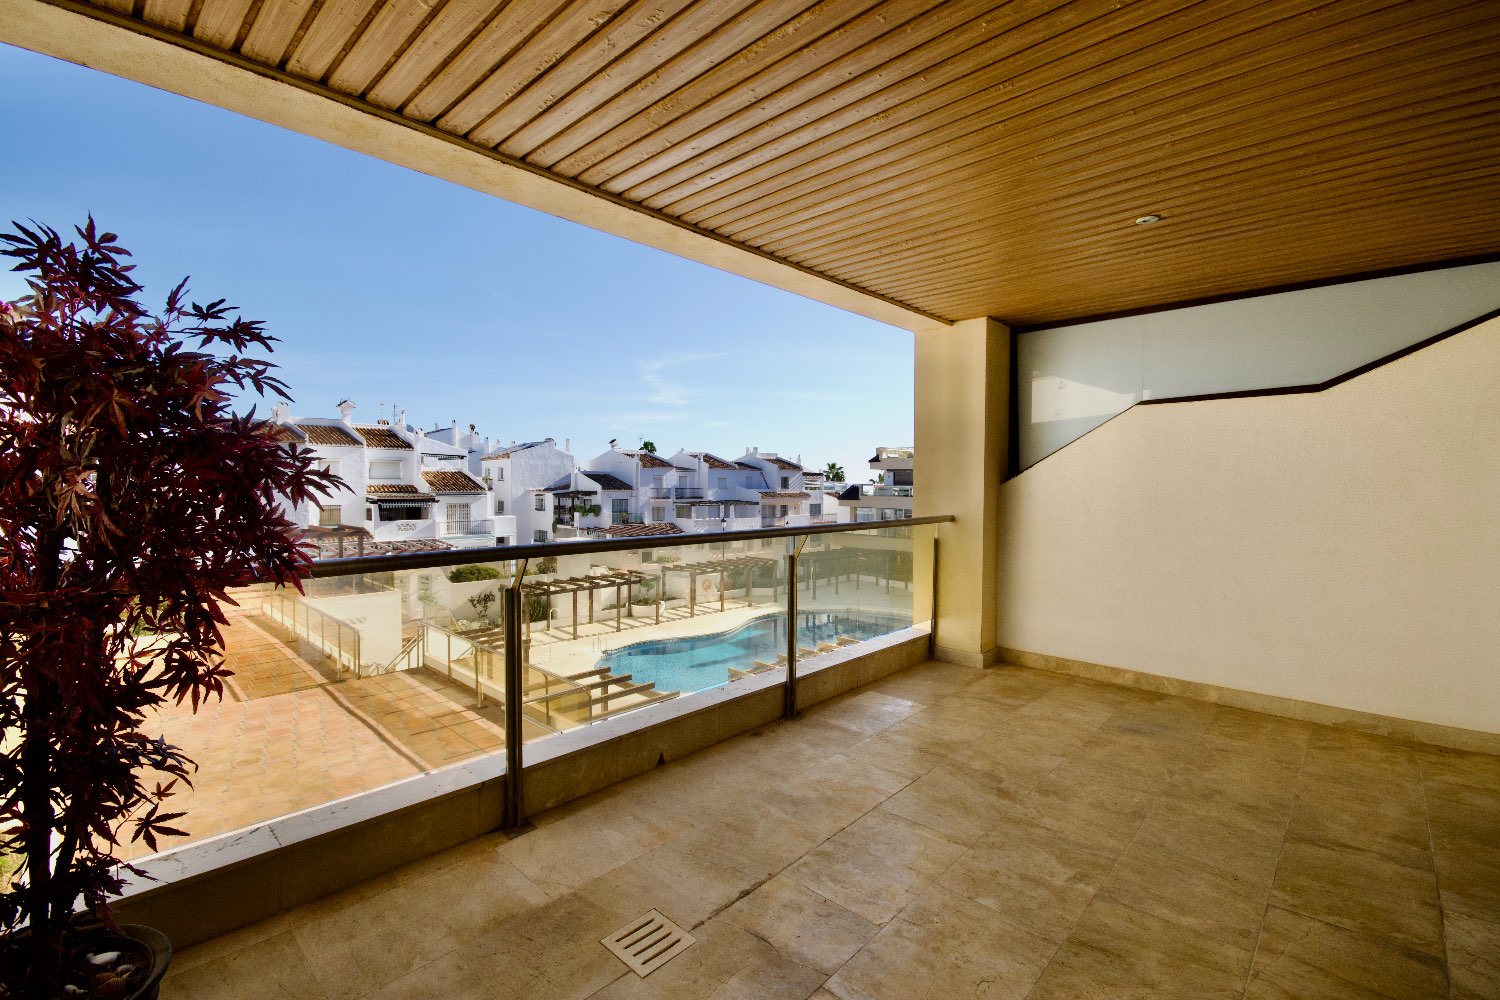 Excepcional apartamento en Marina del Castillo - Puerto de La Duquesa - Manilva - Málaga